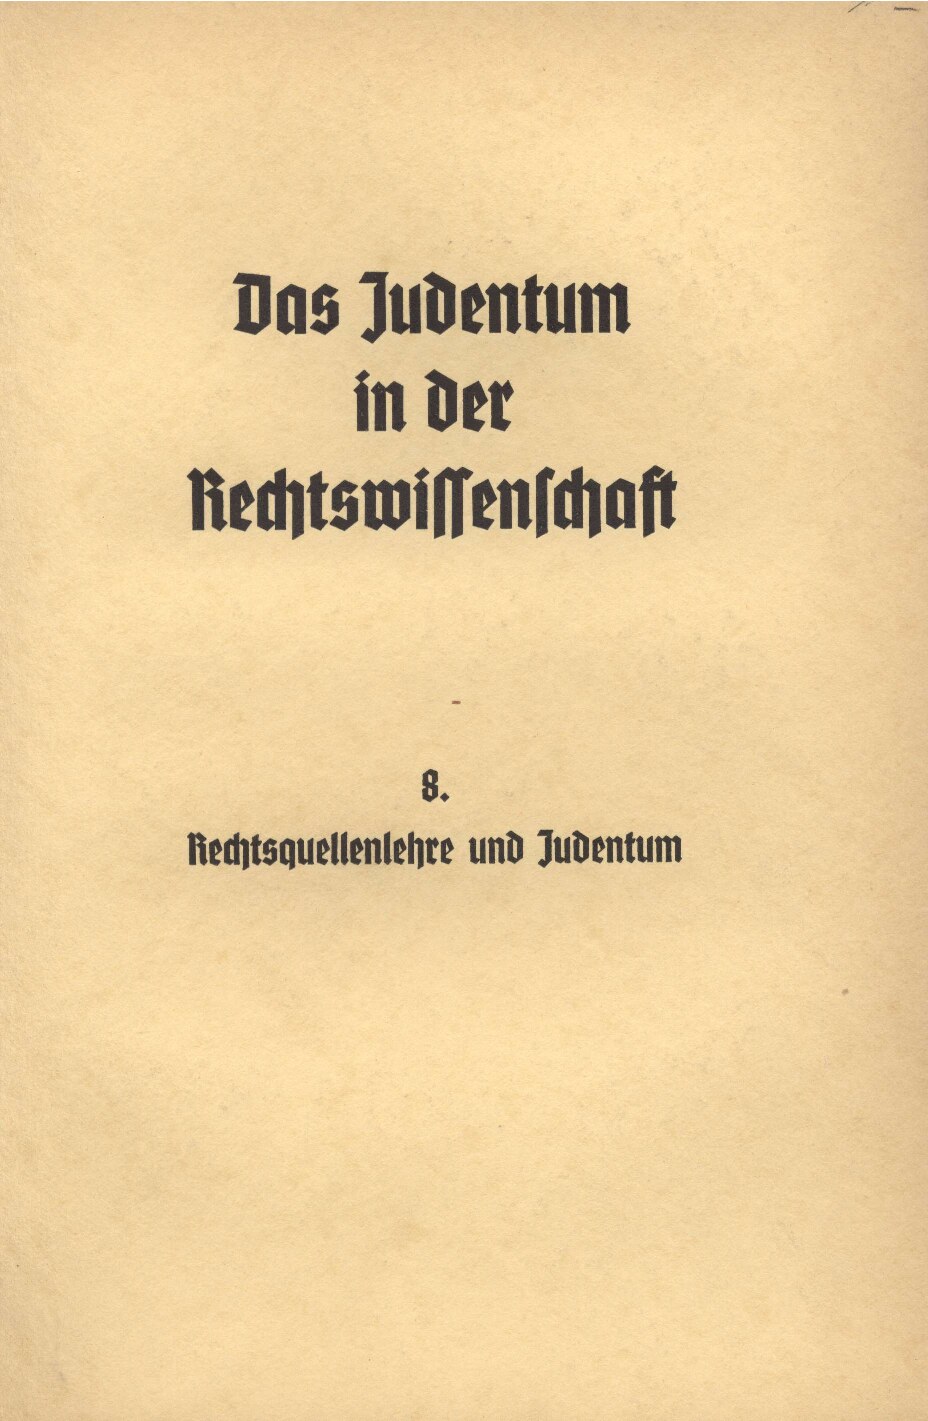 Das Judentum in der Rechtswissenschaft - 8. - Rechtsquellenlehre und Judentum (1938, 48 S., Scan, Fraktur)